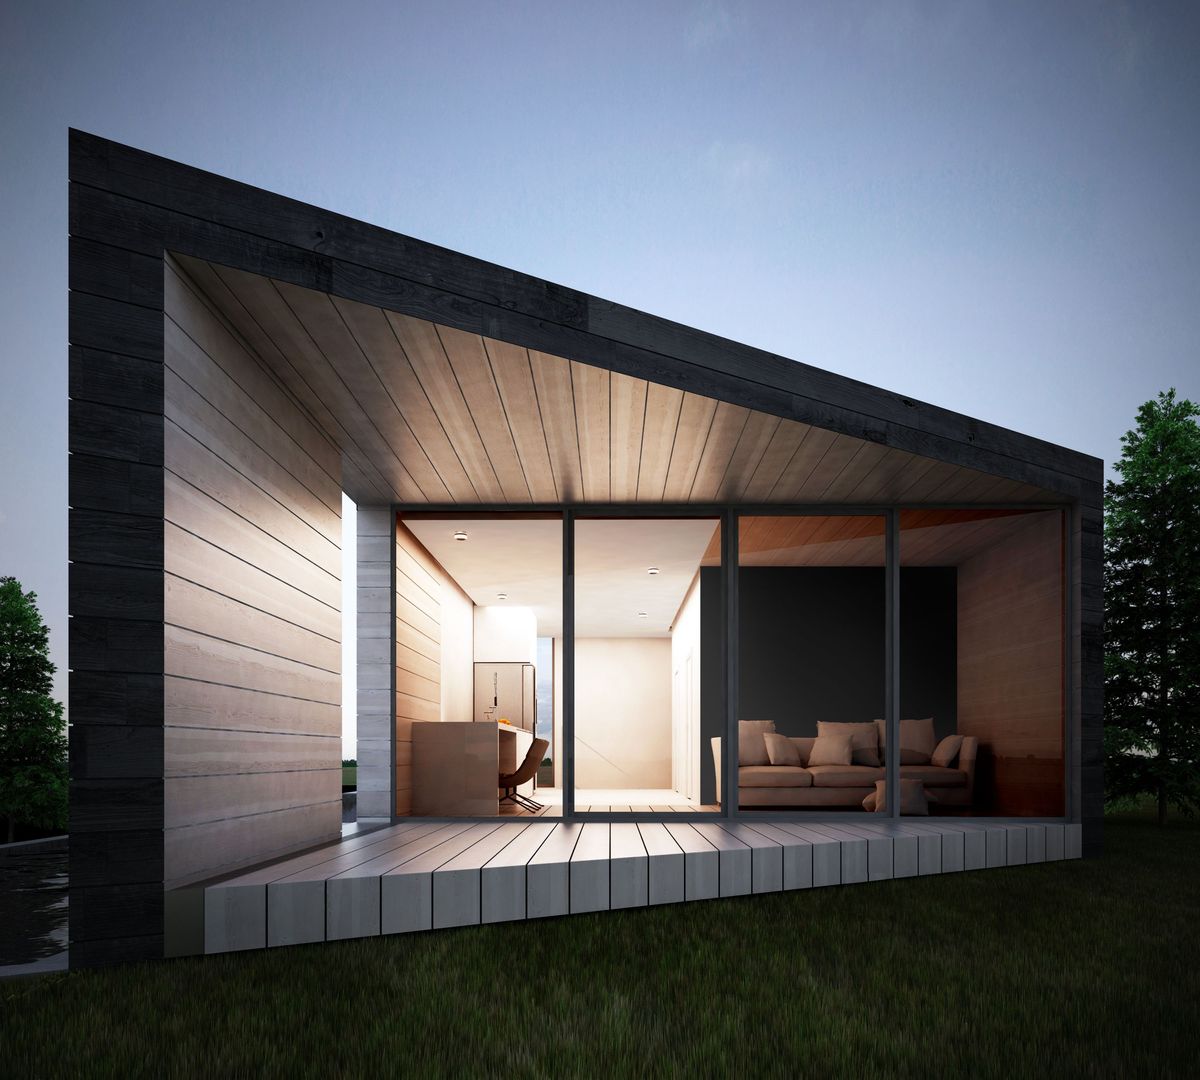 Проект дома в стиле минимализм / Minimalism house, Way-Project Architecture & Design Way-Project Architecture & Design Maisons minimalistes